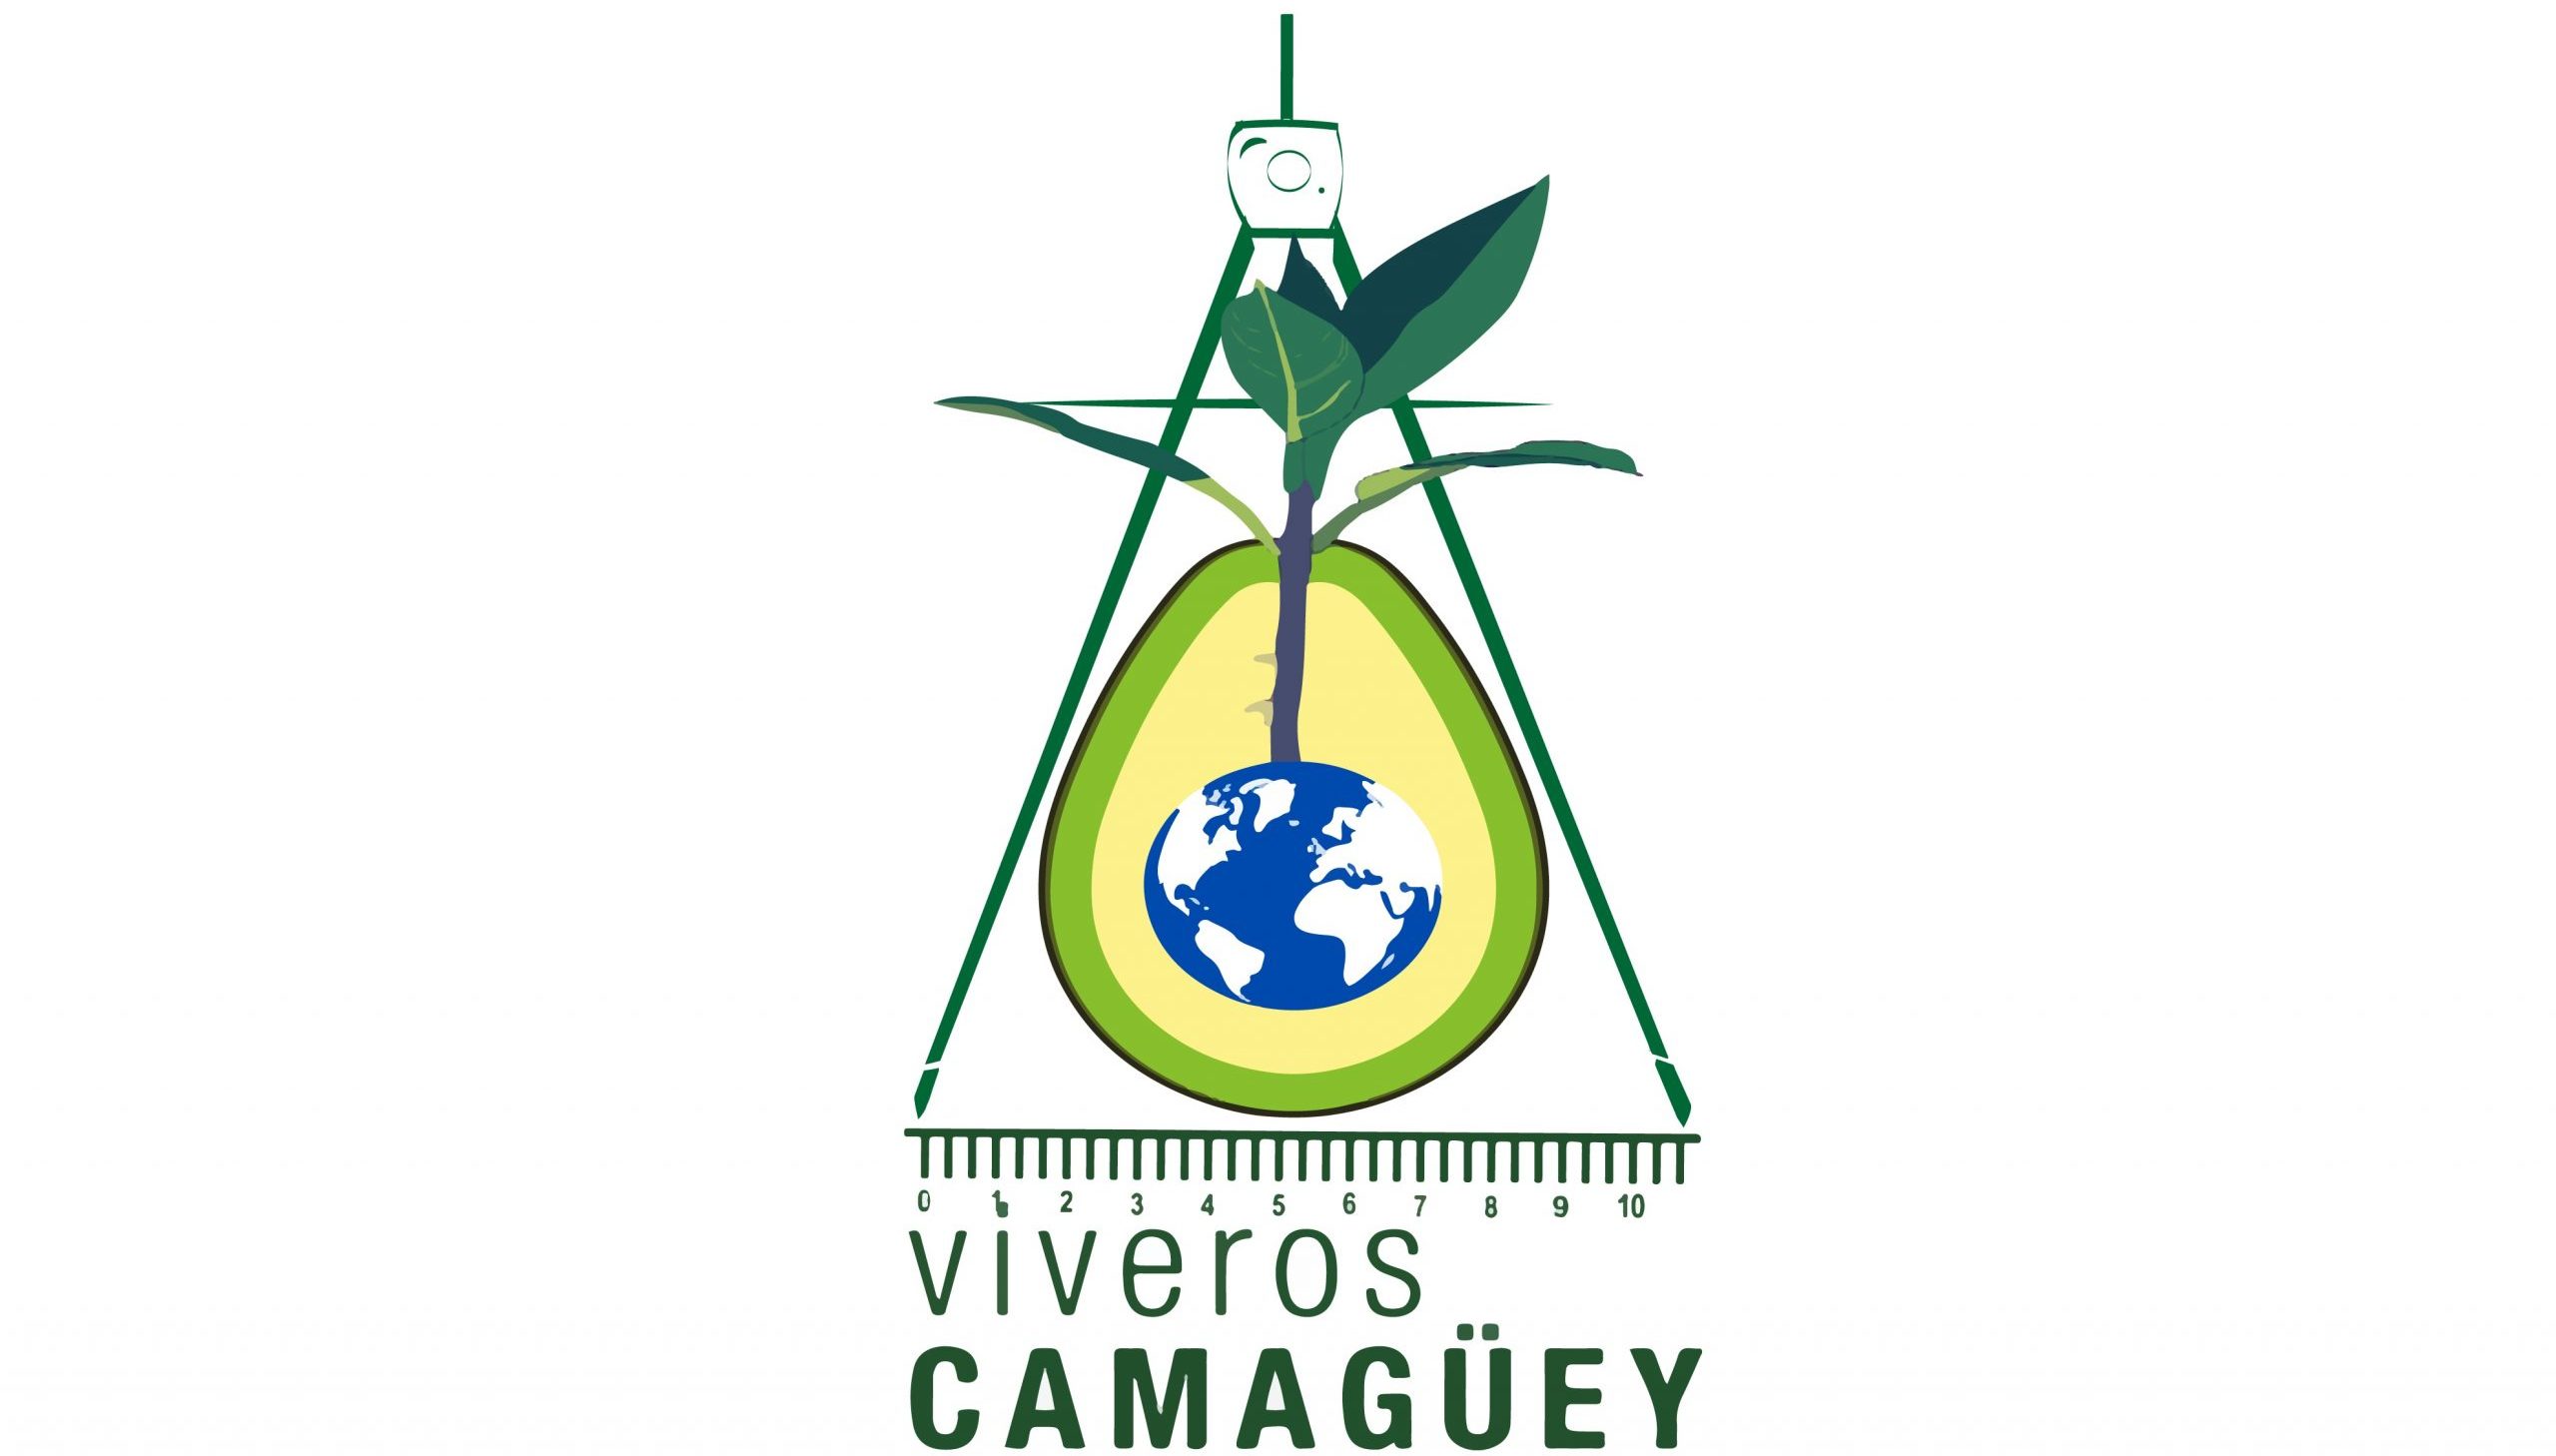 Viveros Camagüey